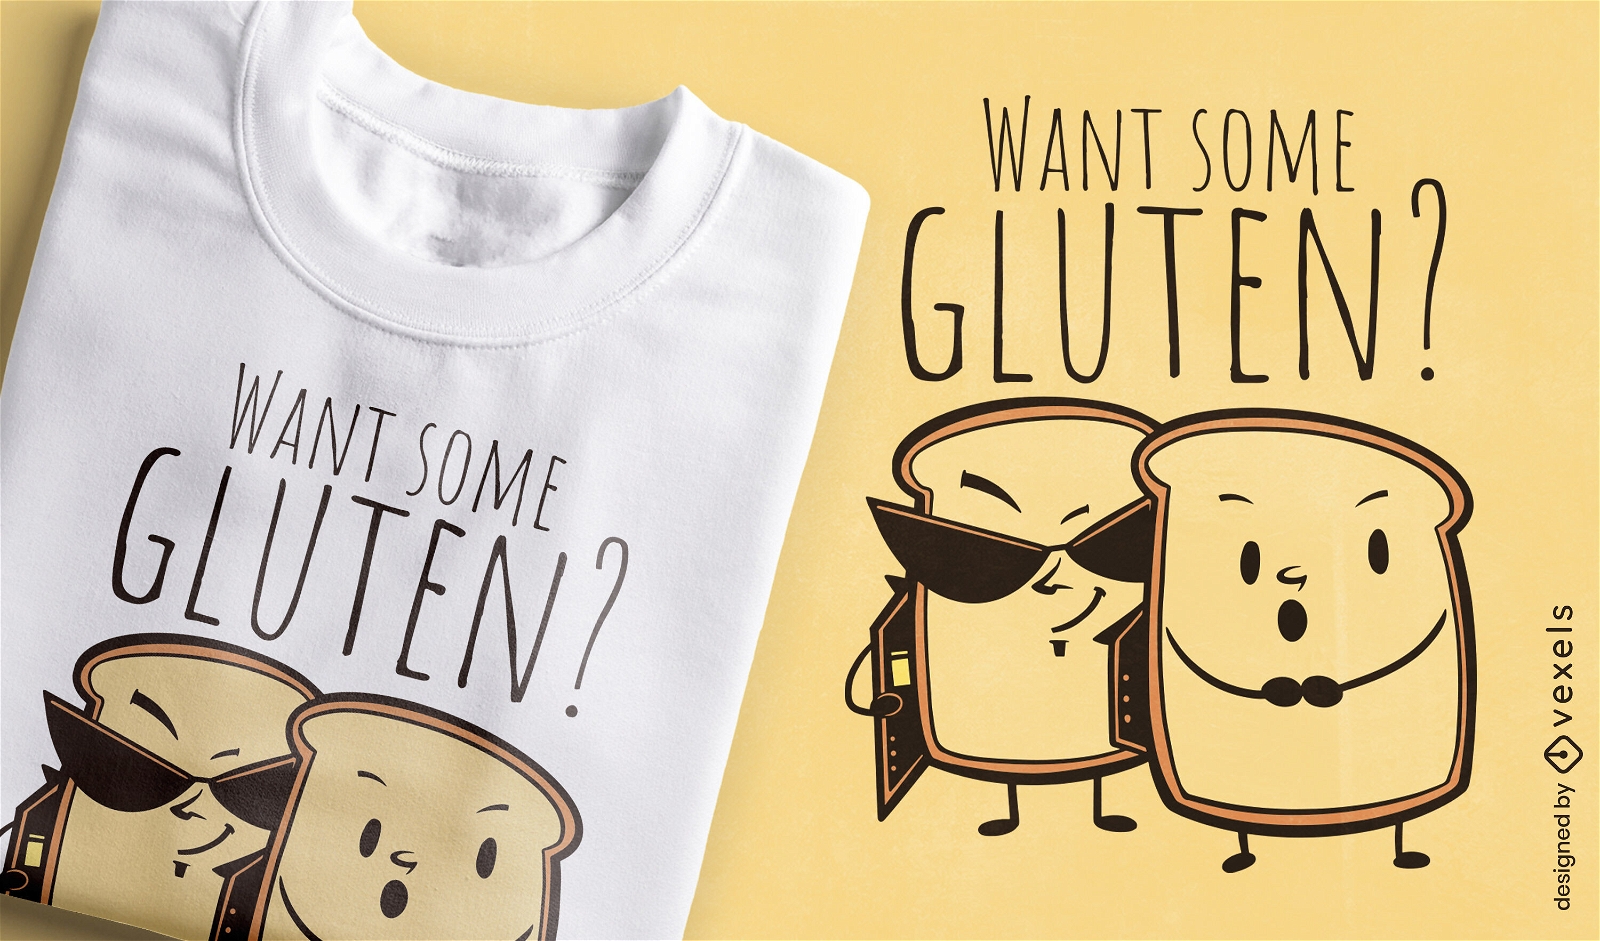 Brot röstet lustiges Wortspiel T-Shirt Design